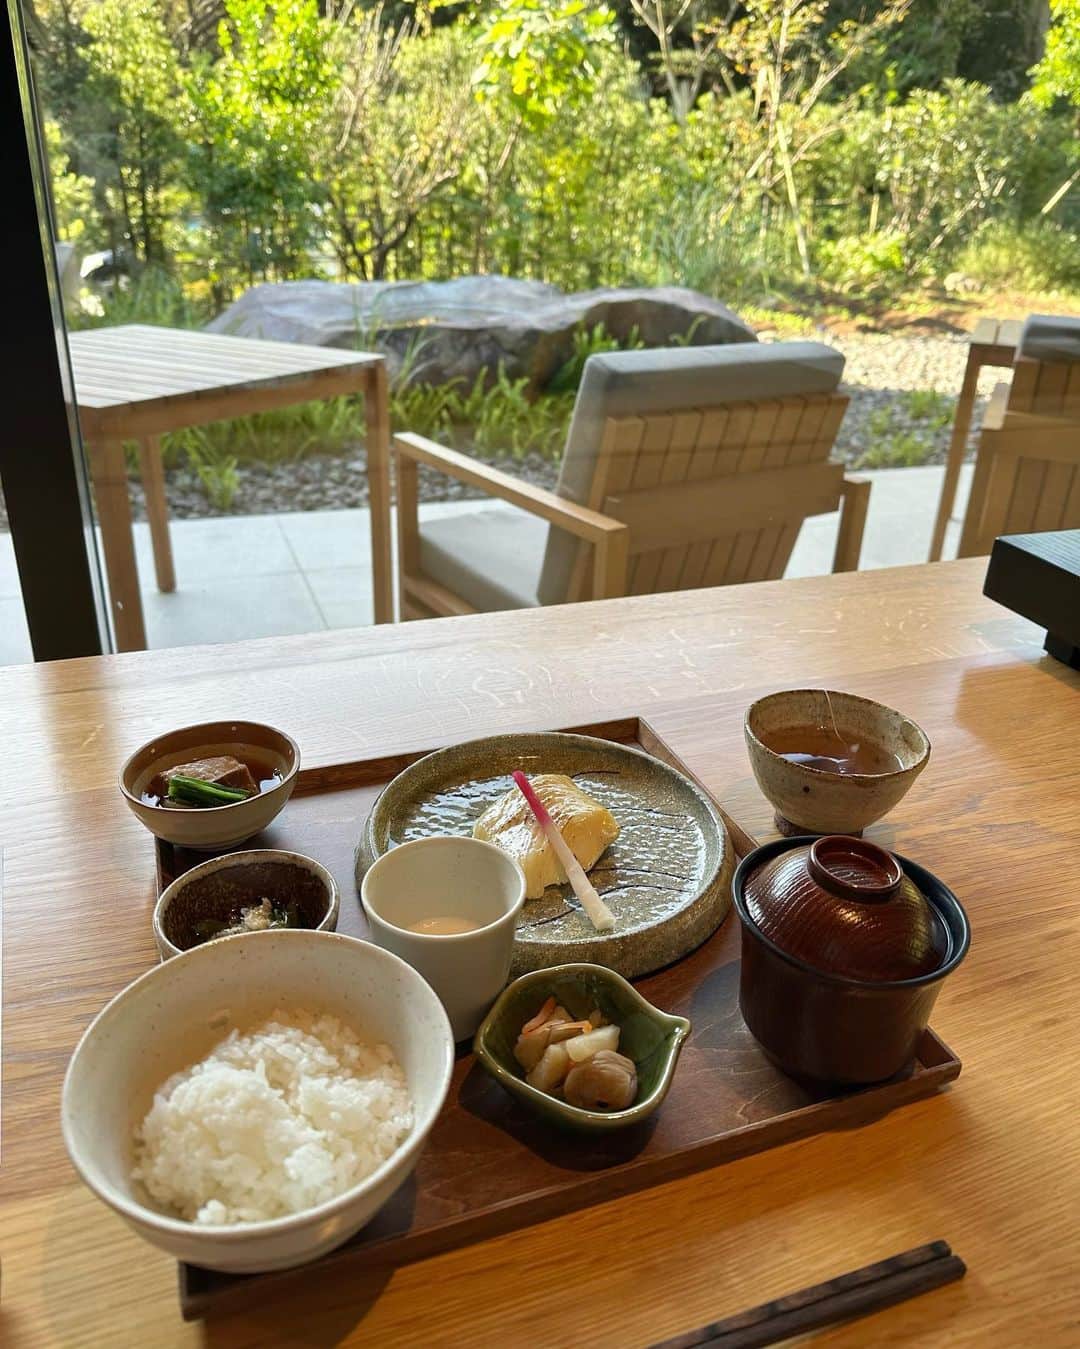 miho uesugiのインスタグラム：「@soki_atami に宿泊♨️ ㅤㅤㅤㅤㅤㅤㅤㅤㅤㅤㅤㅤㅤ 夜ご飯は炭火の炉を囲んだオープンキッチンで、とても美味しいコース料理を。 朝ごはんはお魚定食に、ビュッフェまであるとは…！ ㅤㅤㅤㅤㅤㅤㅤㅤㅤㅤㅤㅤㅤ  檜のお風呂が付いたお部屋で、香りにも癒されました。 24時間入れるのも嬉しい☺️  ㅤㅤㅤㅤㅤㅤㅤㅤㅤㅤㅤㅤㅤ 館内は新しく綺麗で、茶寮もテラスもあります。 ㅤㅤㅤㅤㅤㅤㅤㅤㅤㅤㅤ大人の癒し旅にお勧めの宿です♨️  ㅤㅤㅤㅤㅤㅤㅤㅤㅤㅤㅤㅤㅤ  ㅤㅤㅤㅤㅤㅤㅤㅤㅤㅤㅤㅤㅤ #soki#sokiatami#旅館#宿#熱海#温泉#旅行#朝食#朝ごはん#夕食#コース料理#熱海グルメ#熱海旅行」